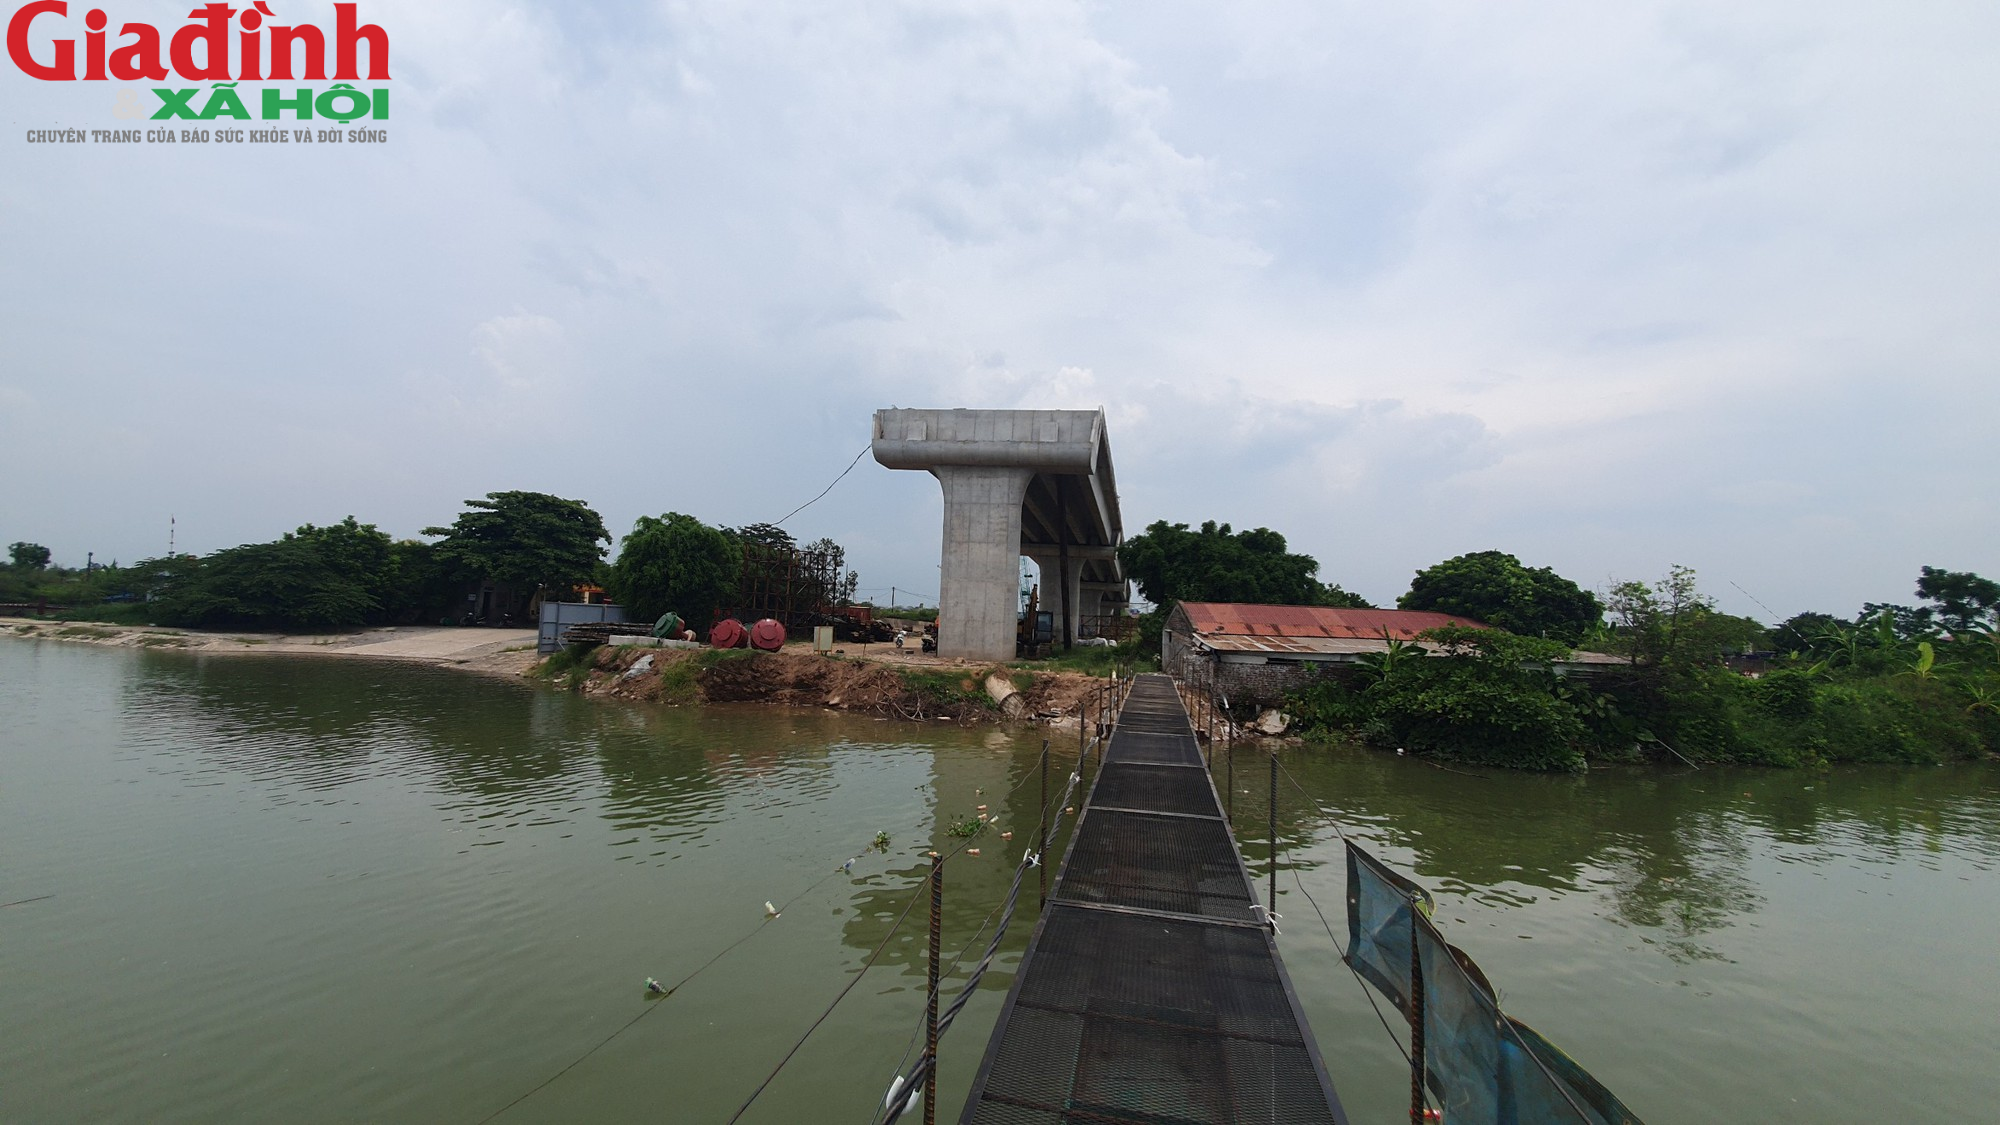 Sẽ không còn cảnh chờ phà khi Cầu Đồng Cao nối hai bở sông Đào hoàn thành - Ảnh 5.